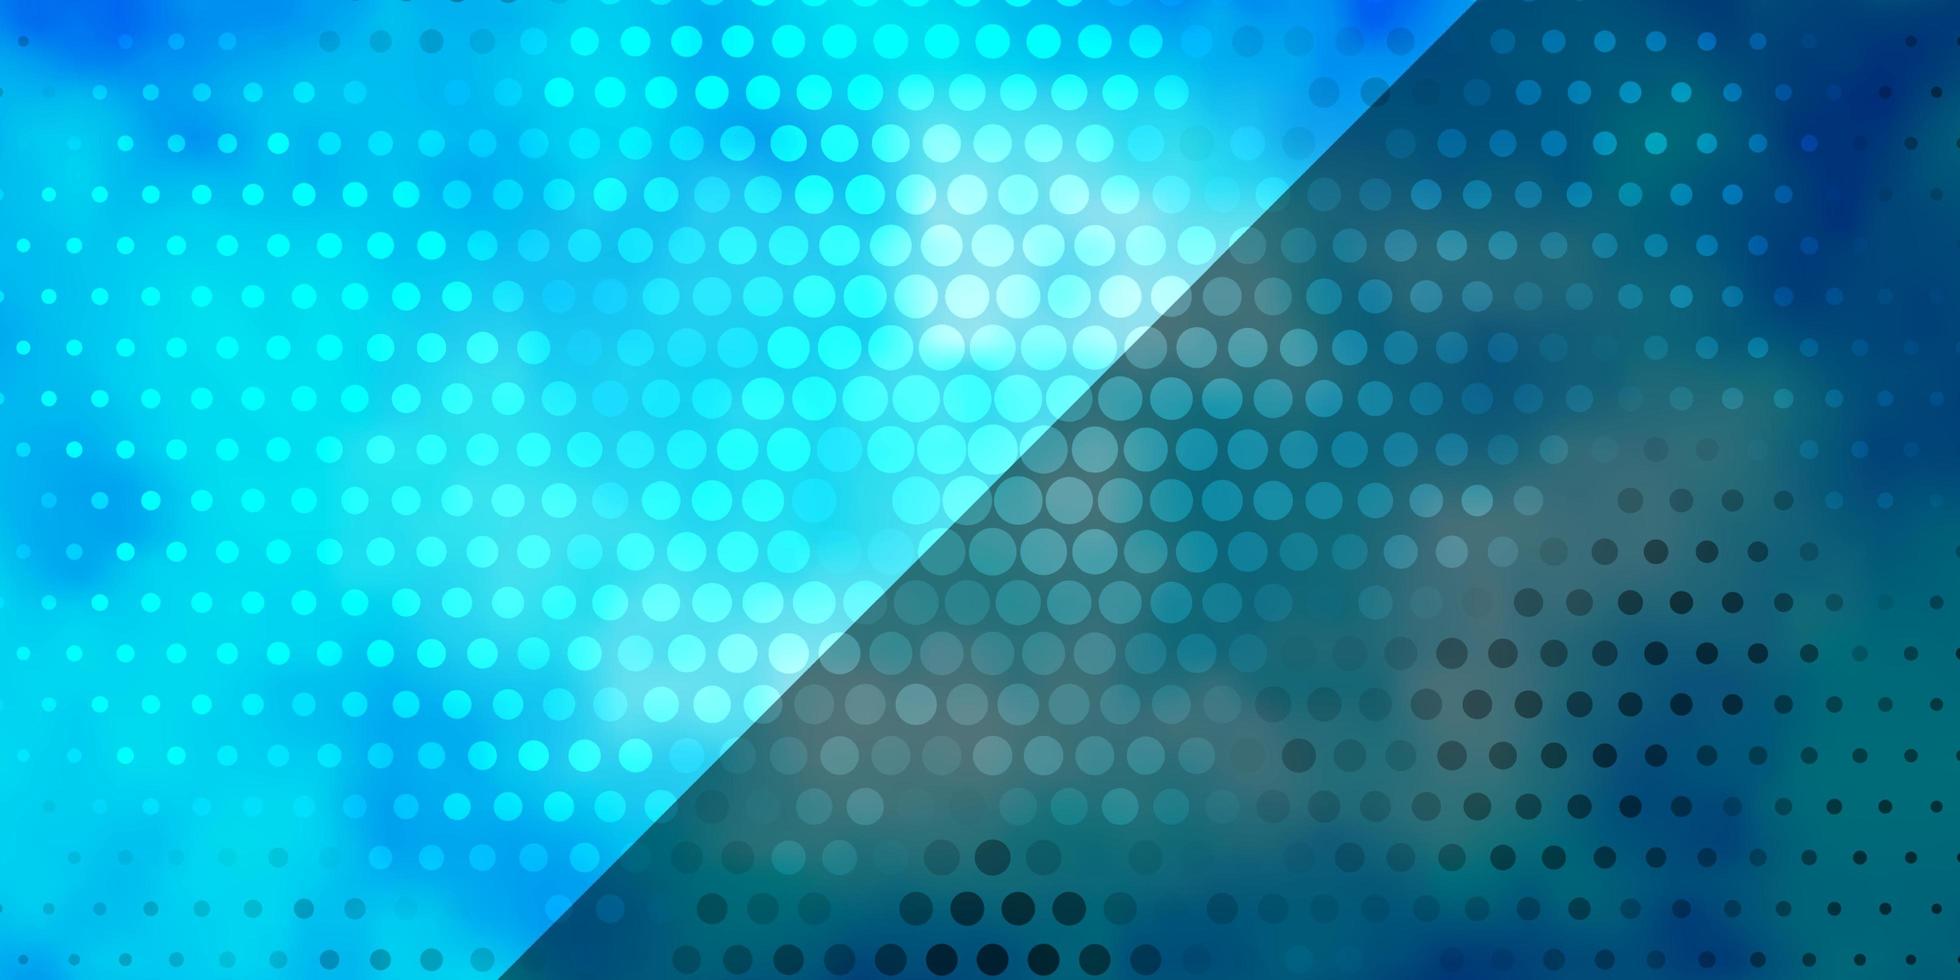 diseño de vector azul claro con círculos